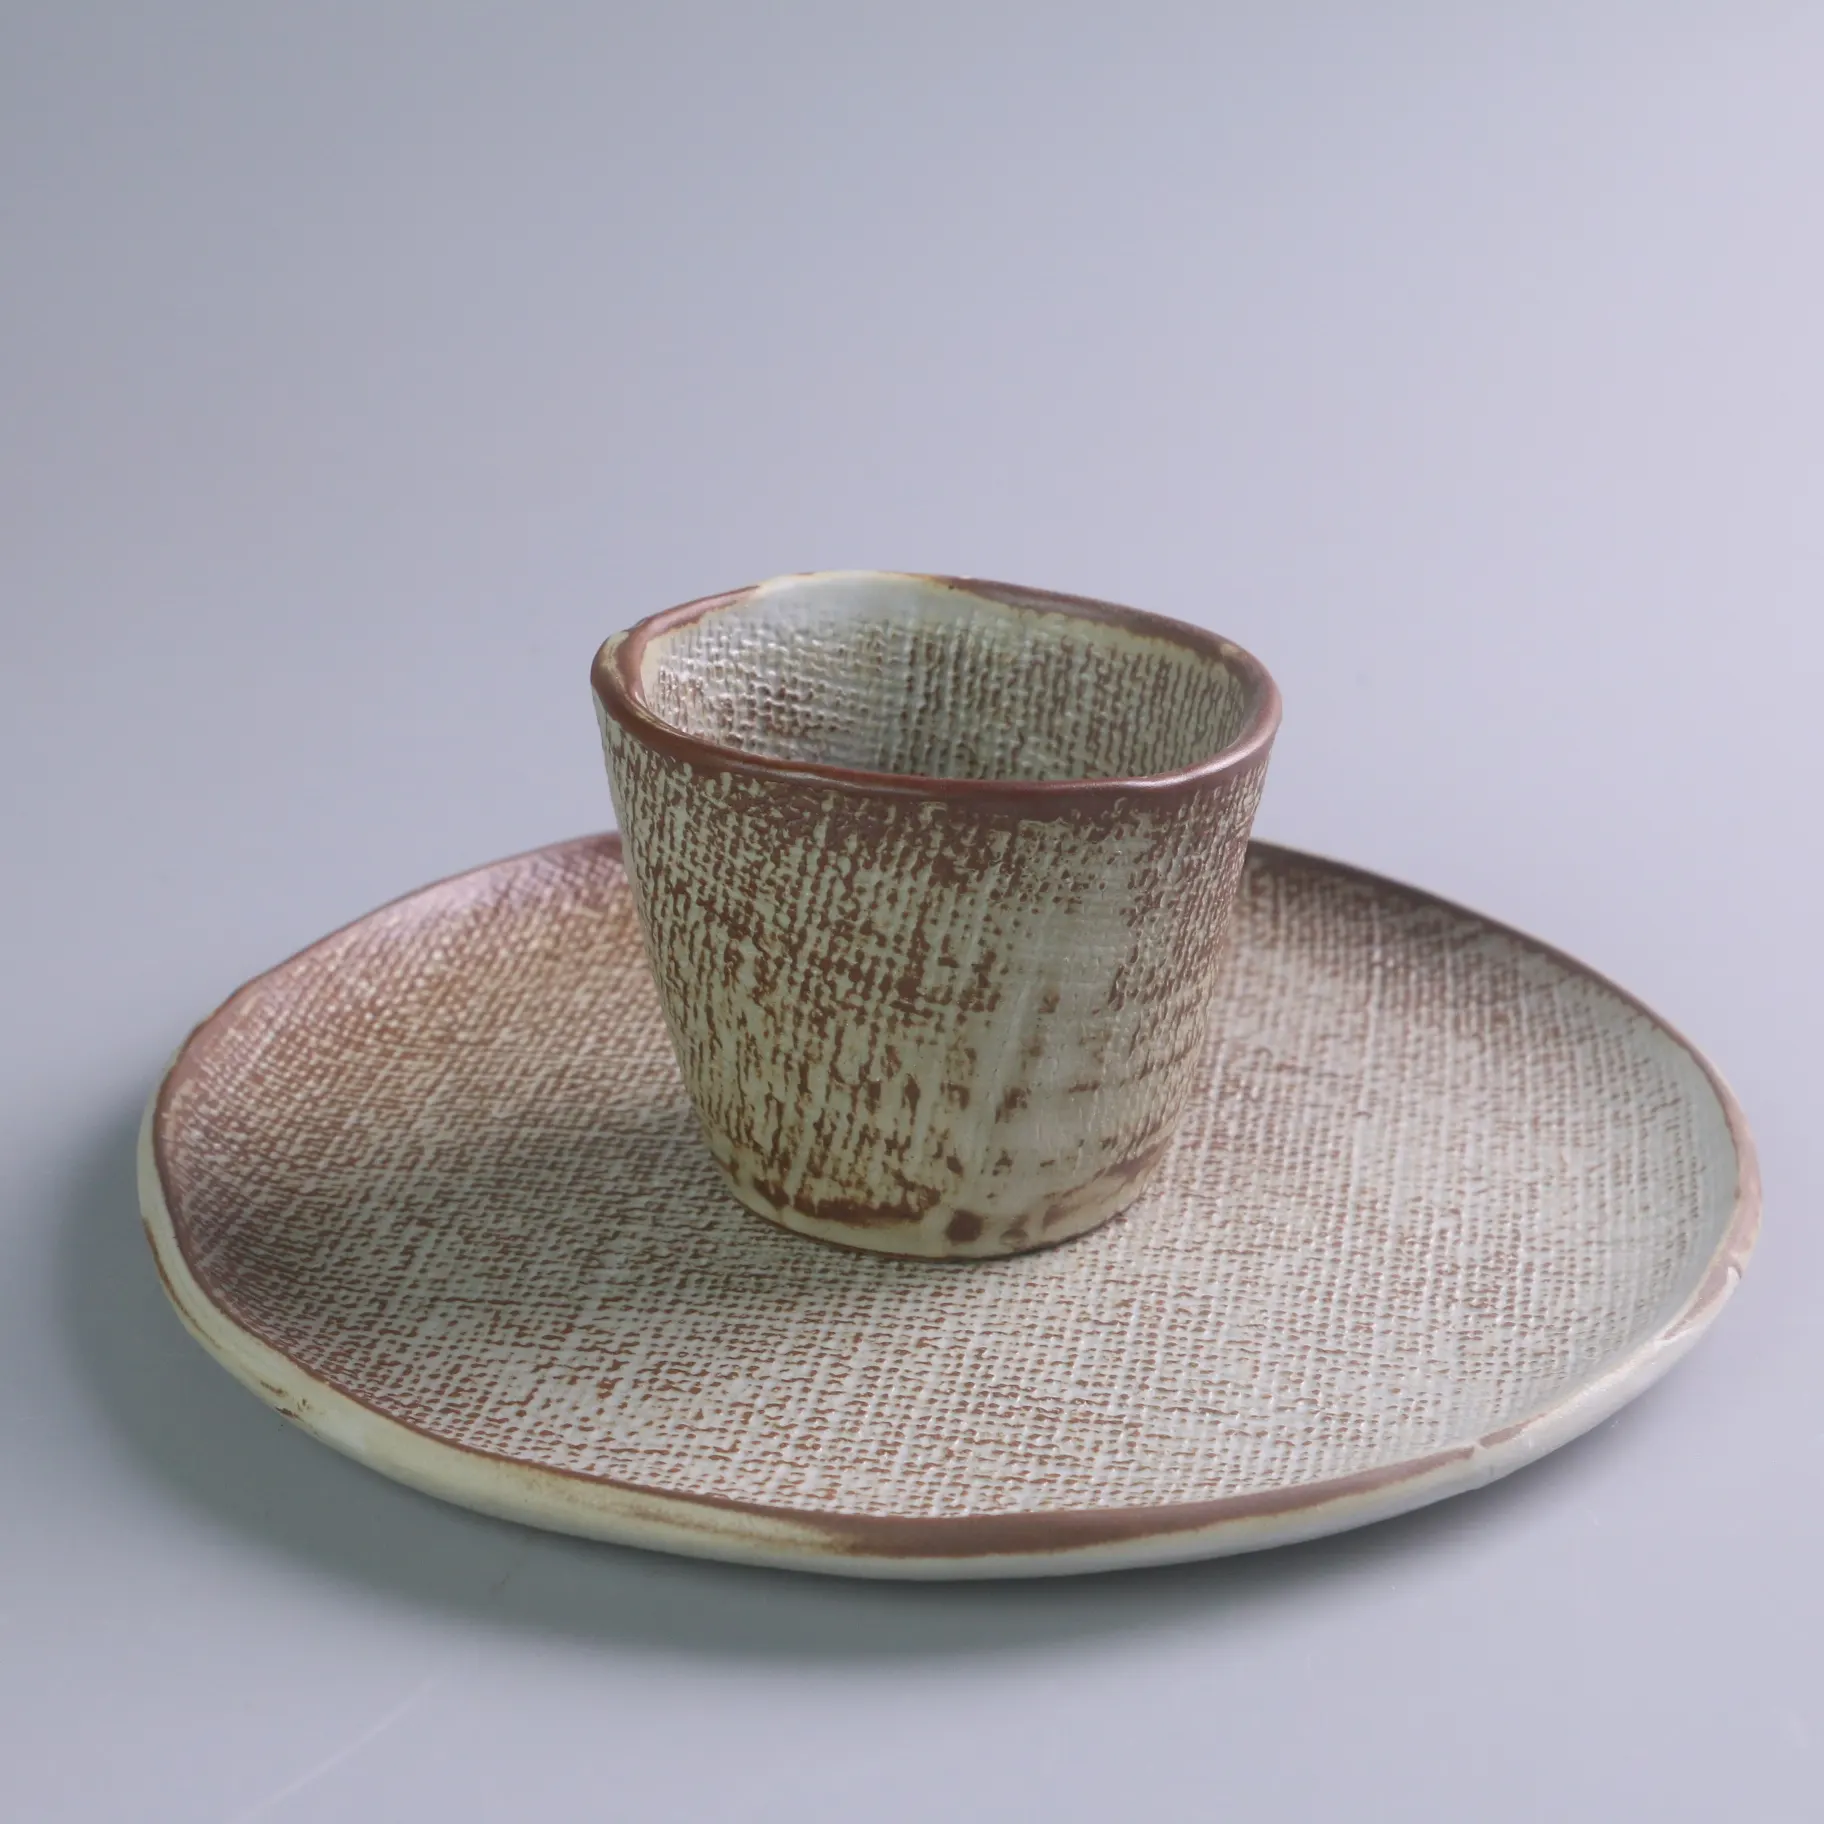 Retro-Stil runde Form Mini Keramik Kaffeetasse ohne Griff Großhandel benutzer definierte Porzellan Joghurt Tasse wieder verwendbar